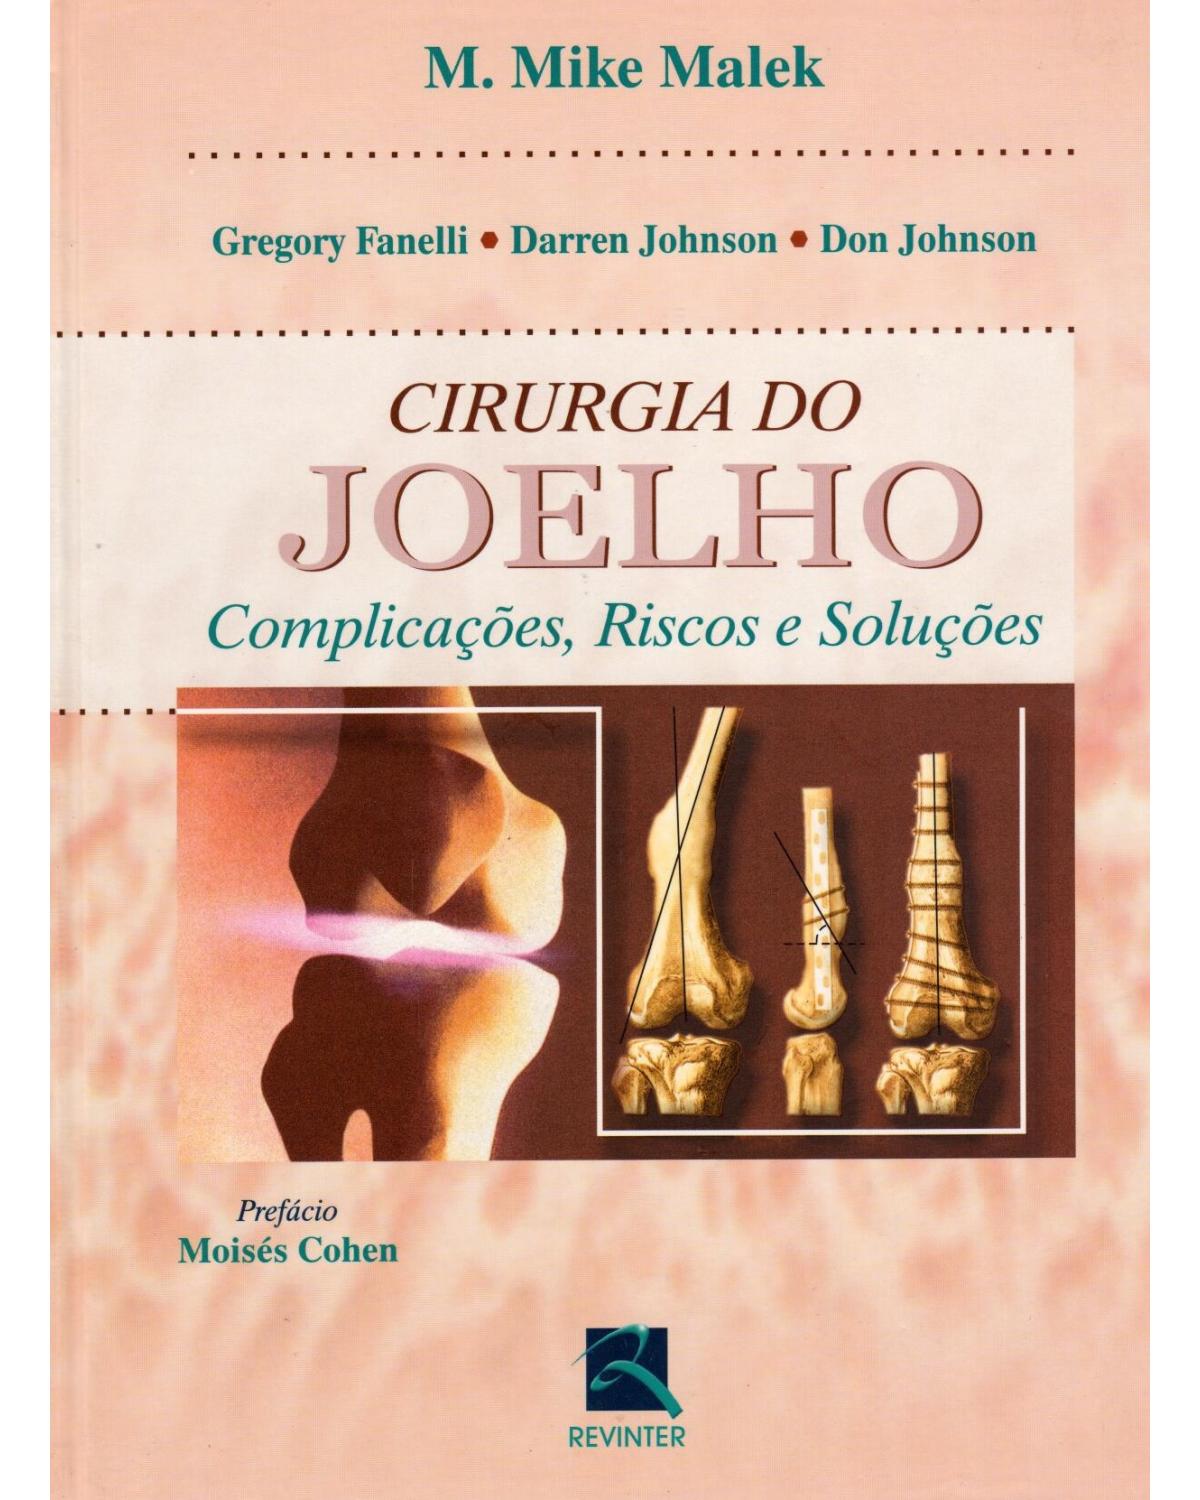 Cirurgia do joelho - complicações, riscos e soluções - 1ª Edição | 2003